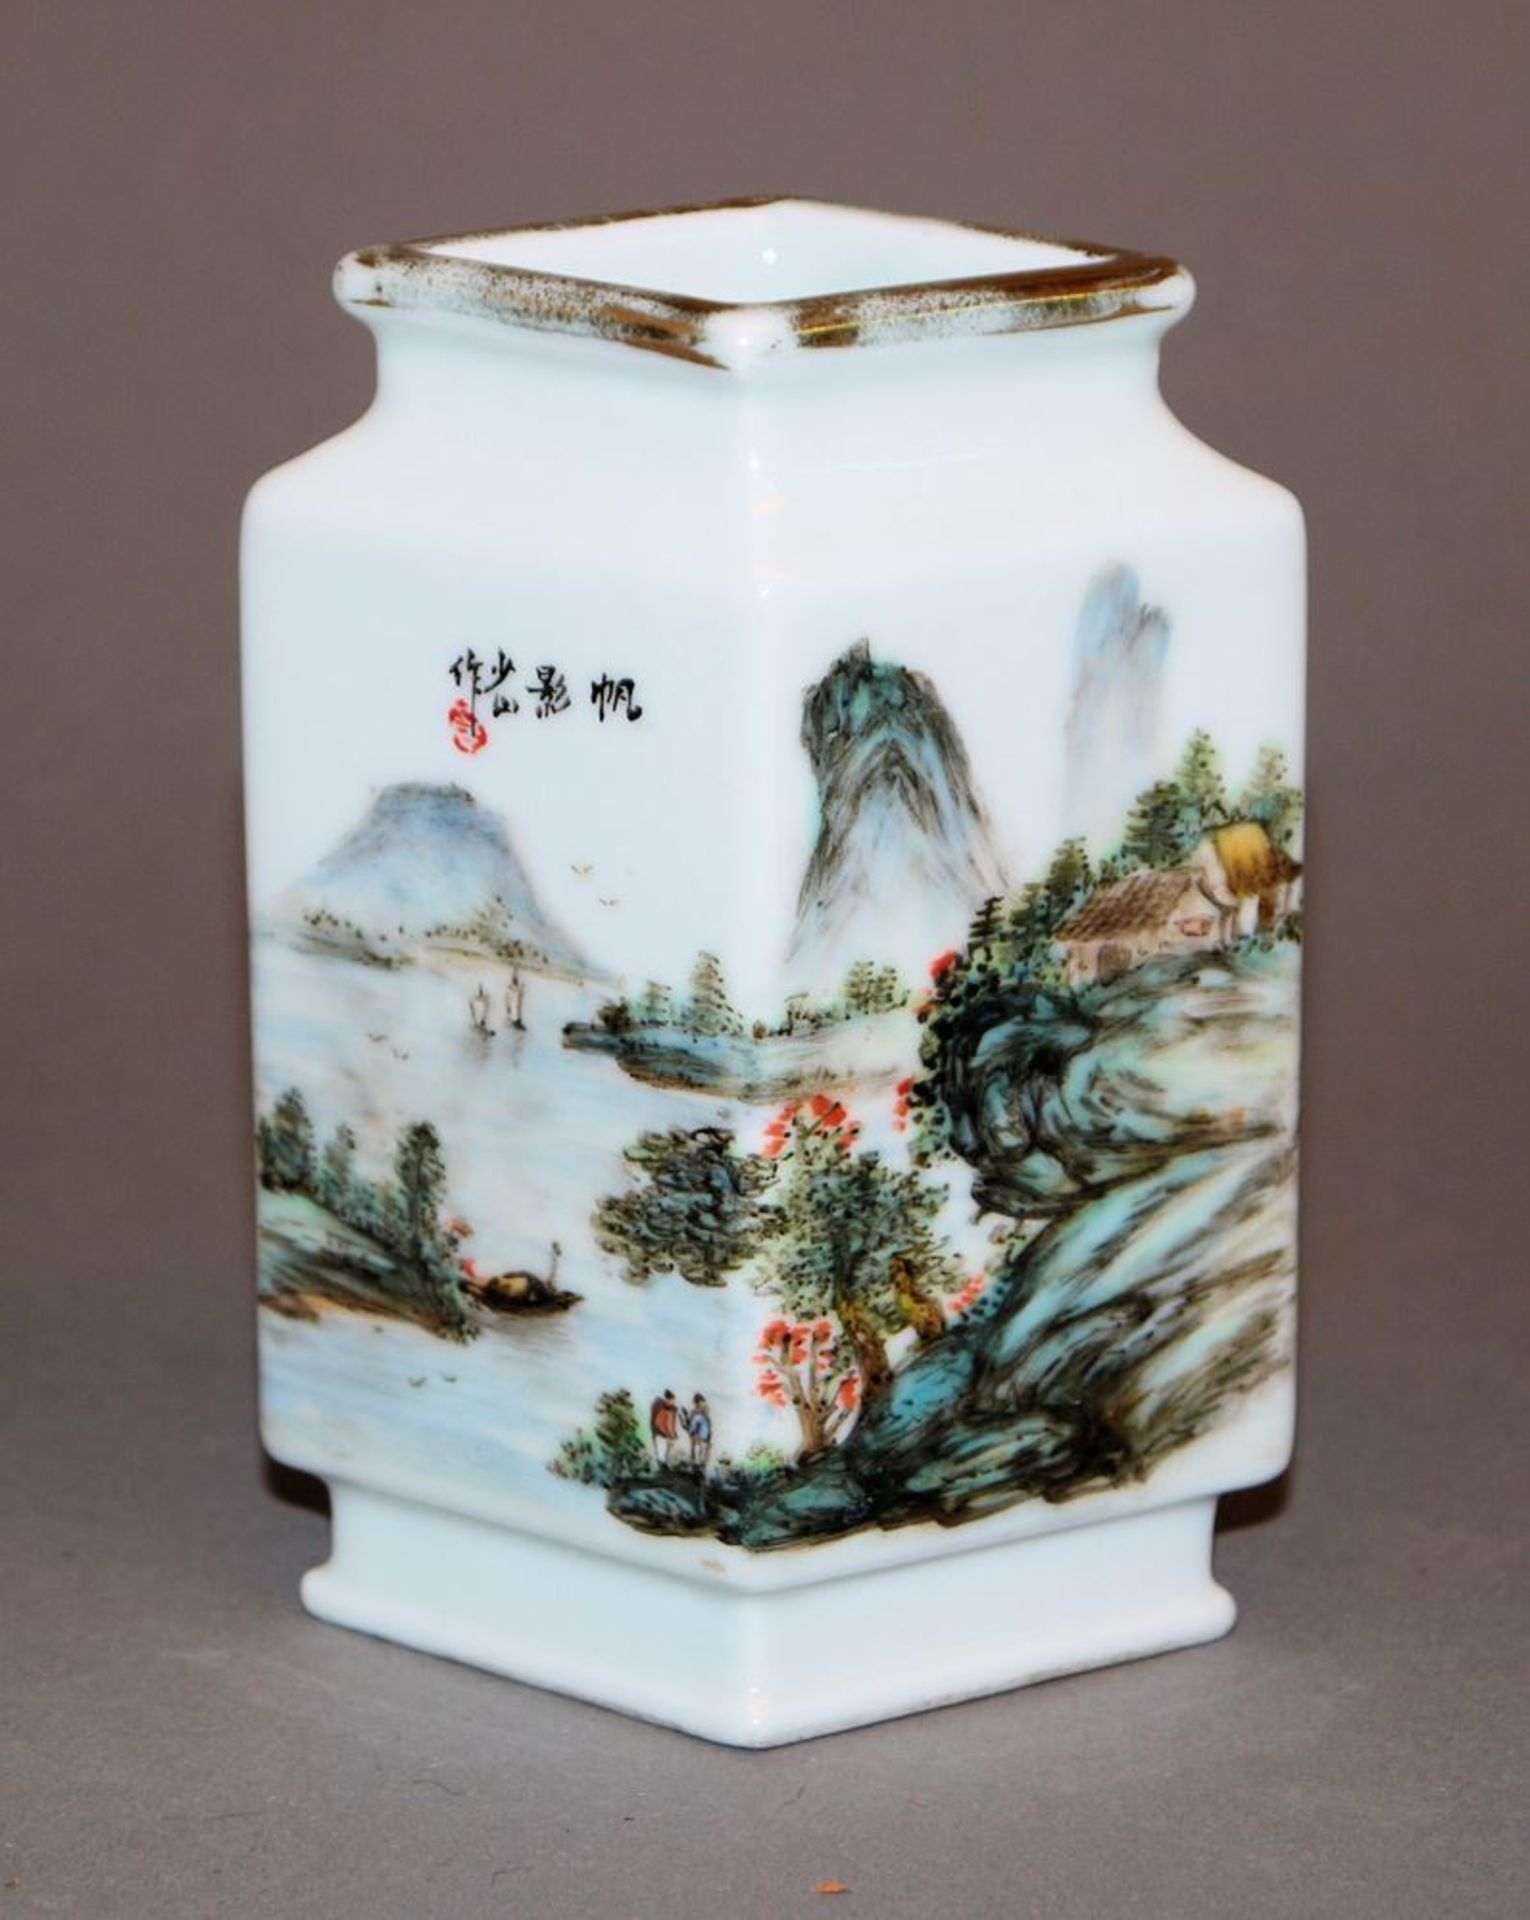 Porzellanvase mit Gemüse und Ideallandschaft, China wohl 1. H. 20. Jh. - Image 2 of 3